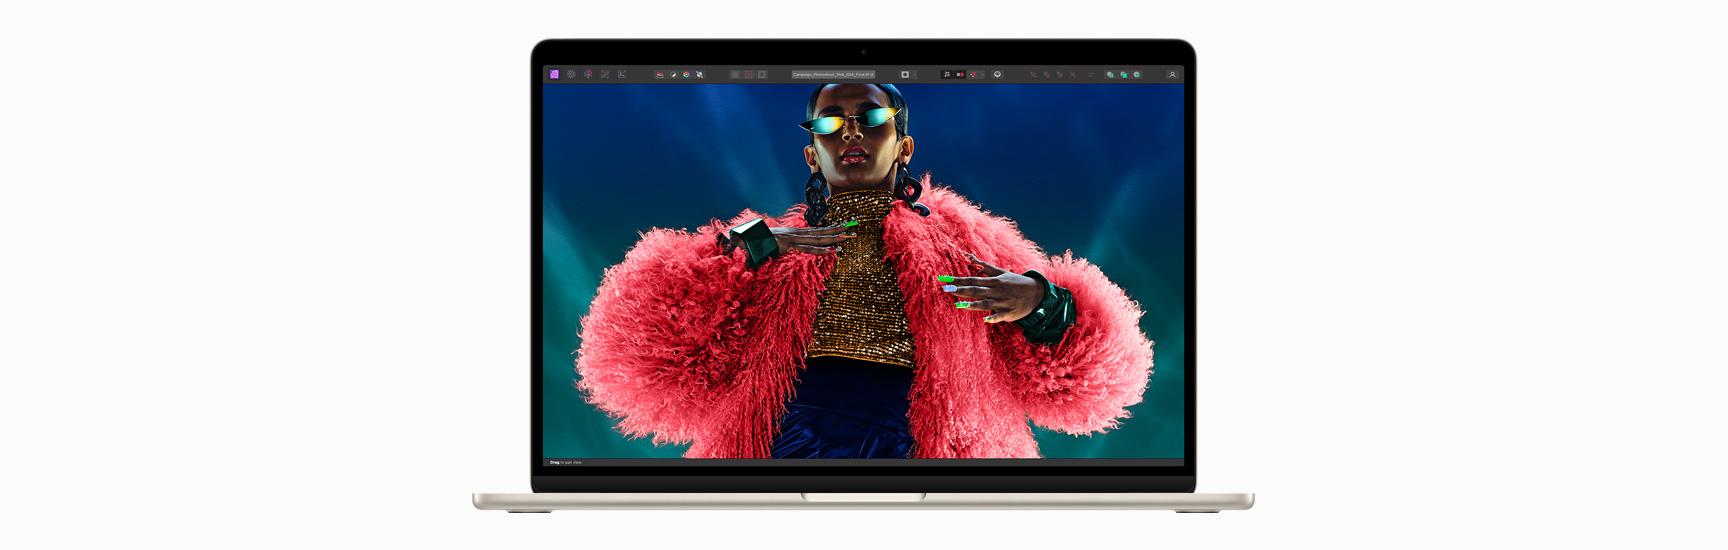 มุมมองด้านหน้าของ MacBook Air ที่แสดงจอภาพ Liquid Retina